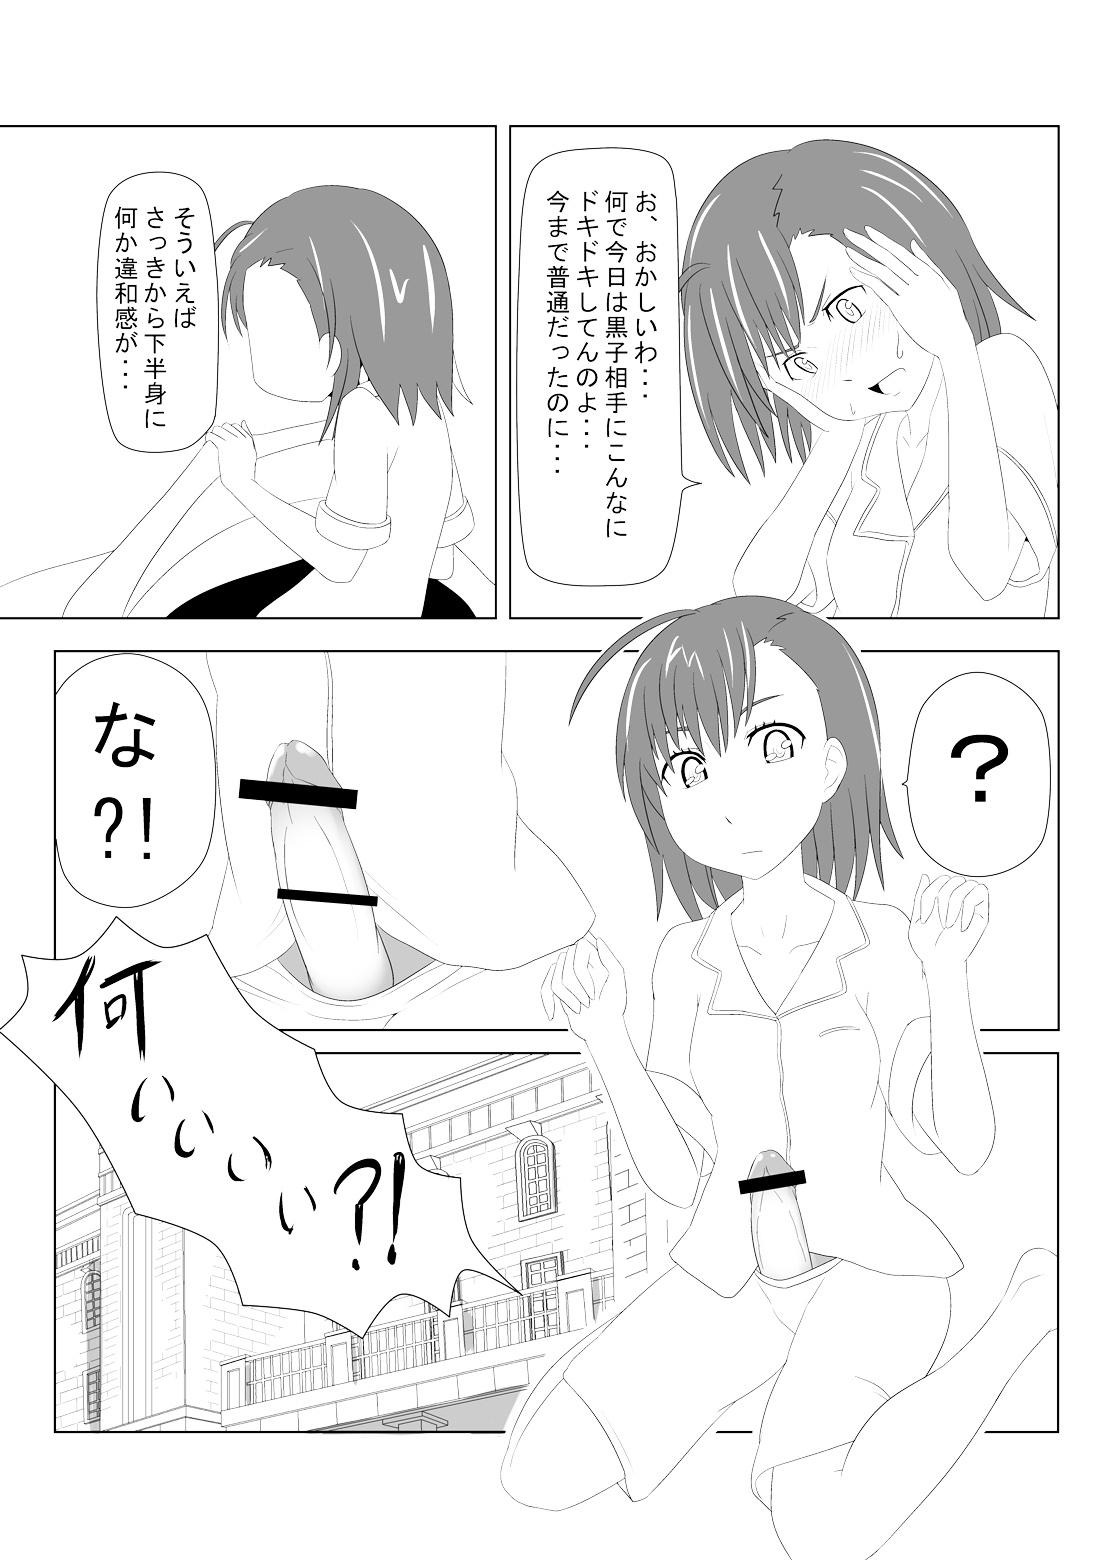 Money Talks Toaru Fuuki iin no Manabi Yori - Toaru kagaku no railgun Rubia - Page 7